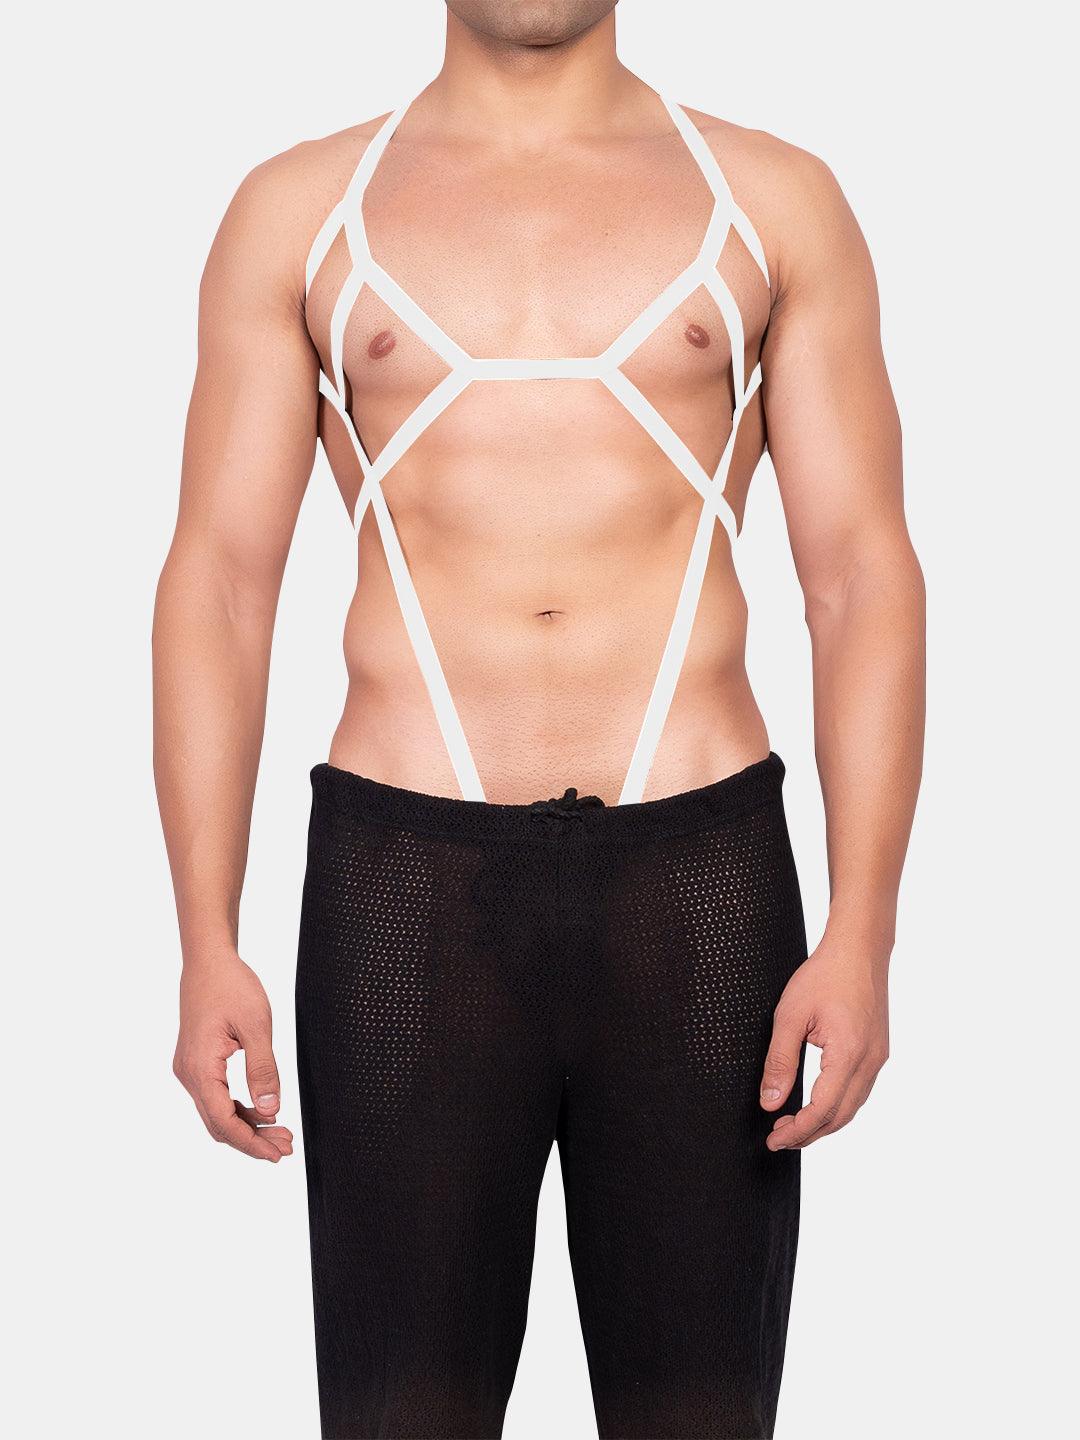 Body Harness - Accessory - Spider Suit - White - Erobold - 